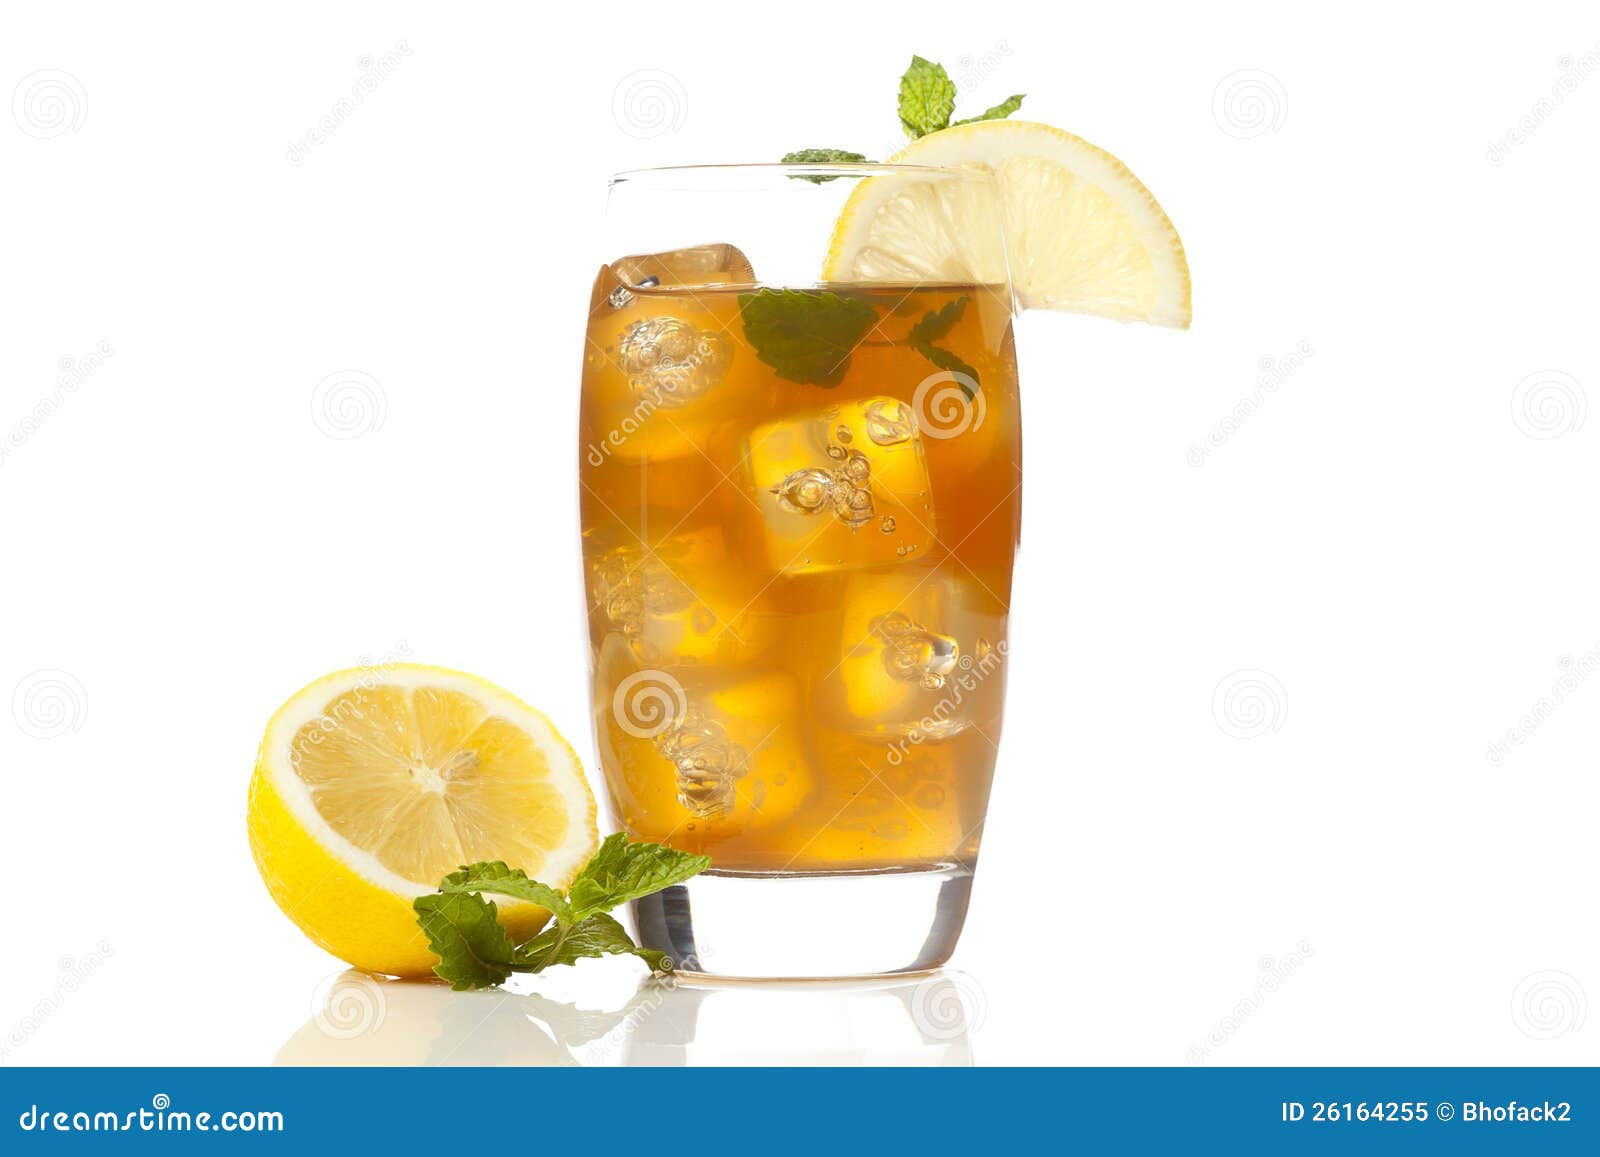 https://thumbs.dreamstime.com/z/refreshing-iced-tea-lemon-26164255.jpg